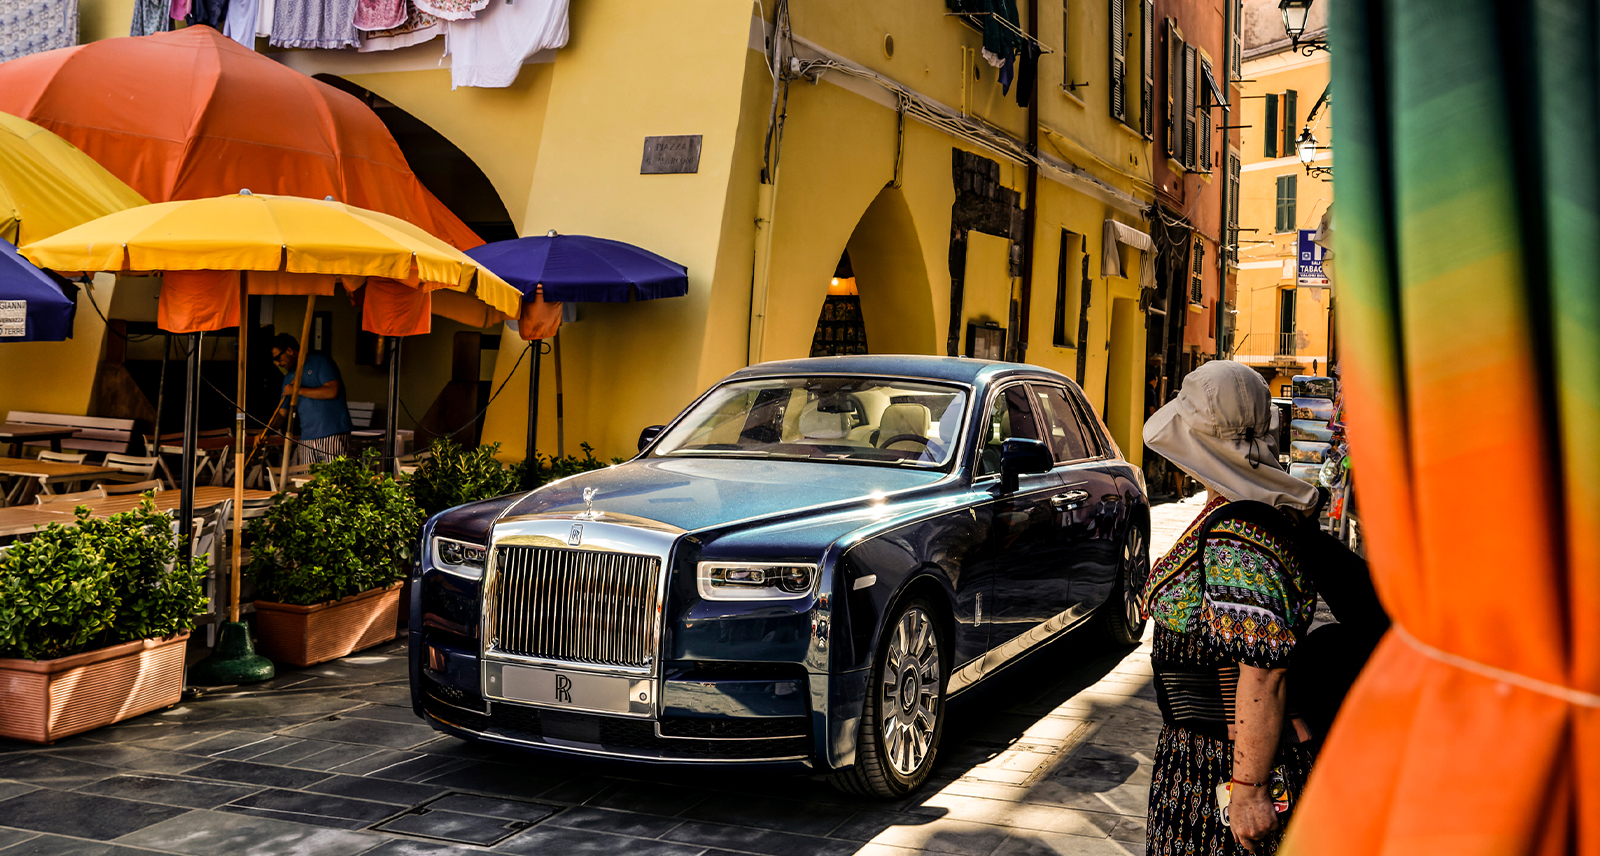 Rolls-Roce parked on an Italian street